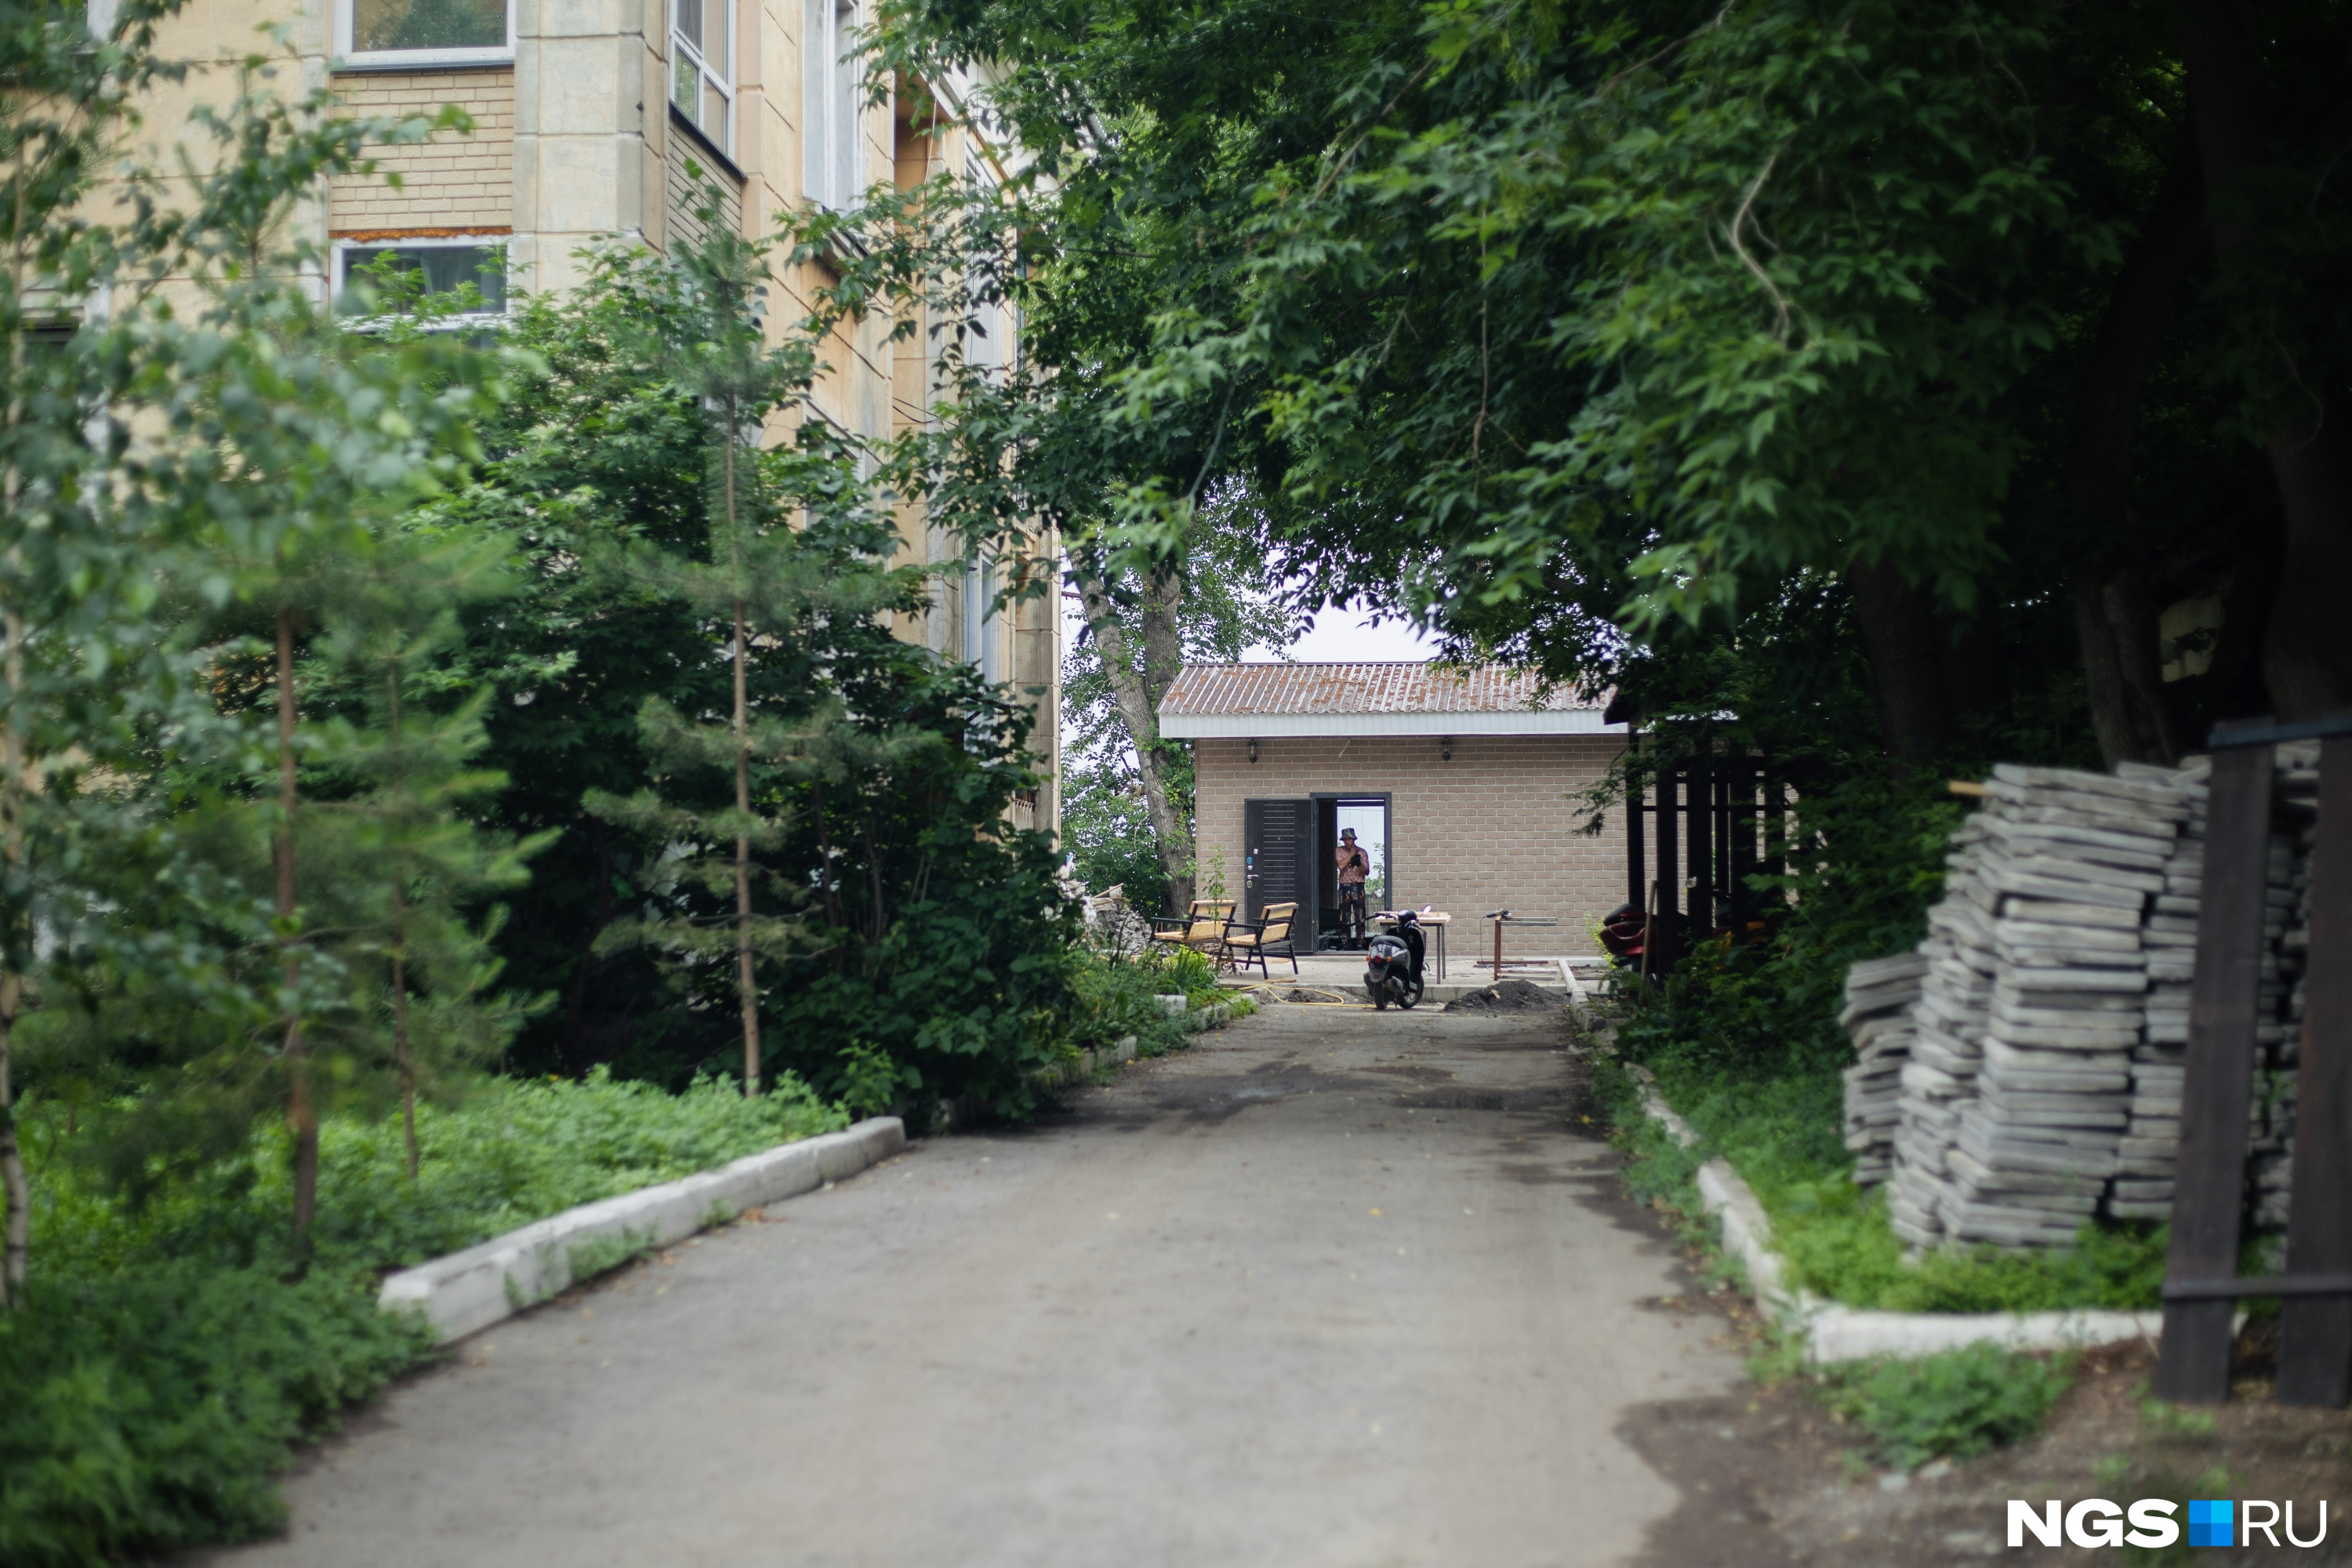 Руслан Коноваленко отстроил некое здание и веранду без согласования с соседями